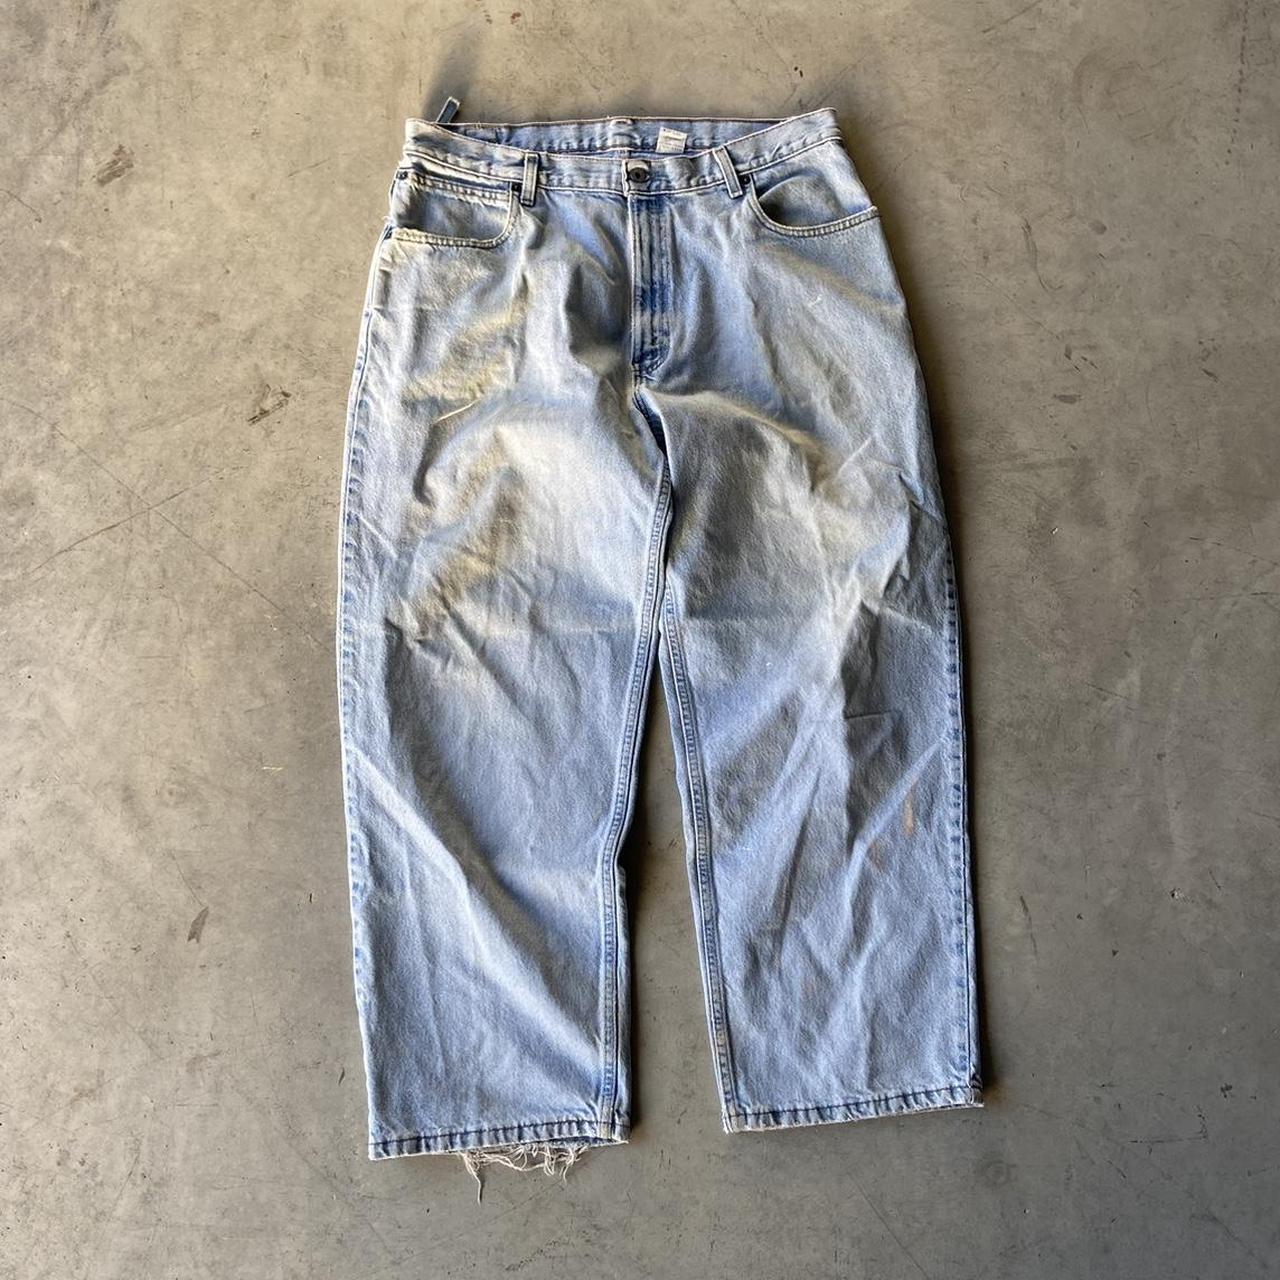 Vintage 90s Levis Jeans | Levi 595’s Good condition... - Depop